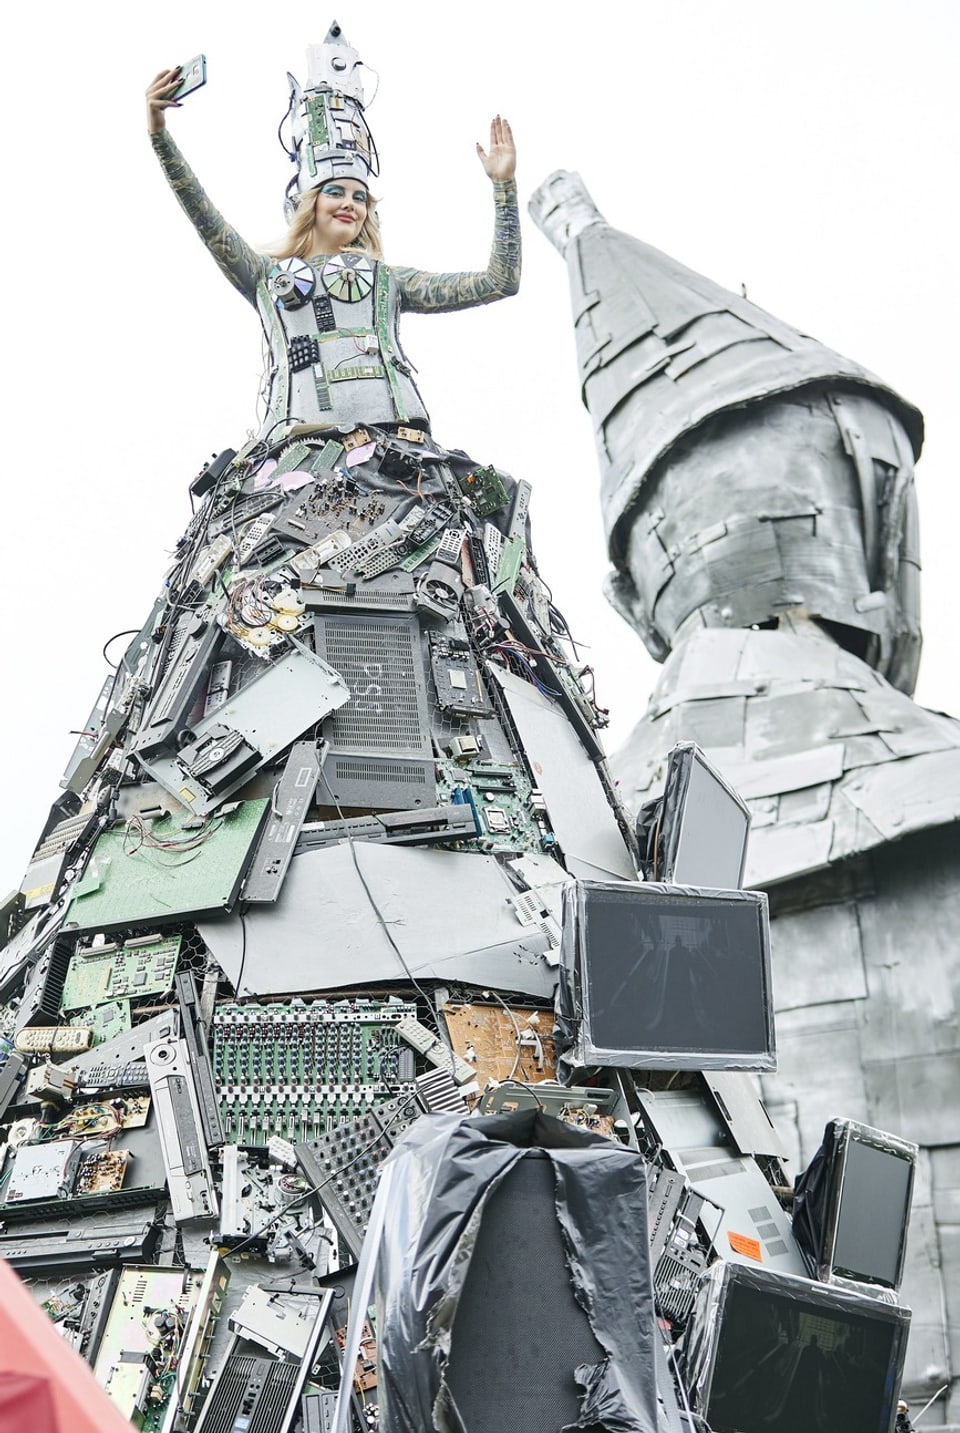 Eine Person in einem Kostüm, das aus vielen elektronischen Teilen zusammengestellt ist.